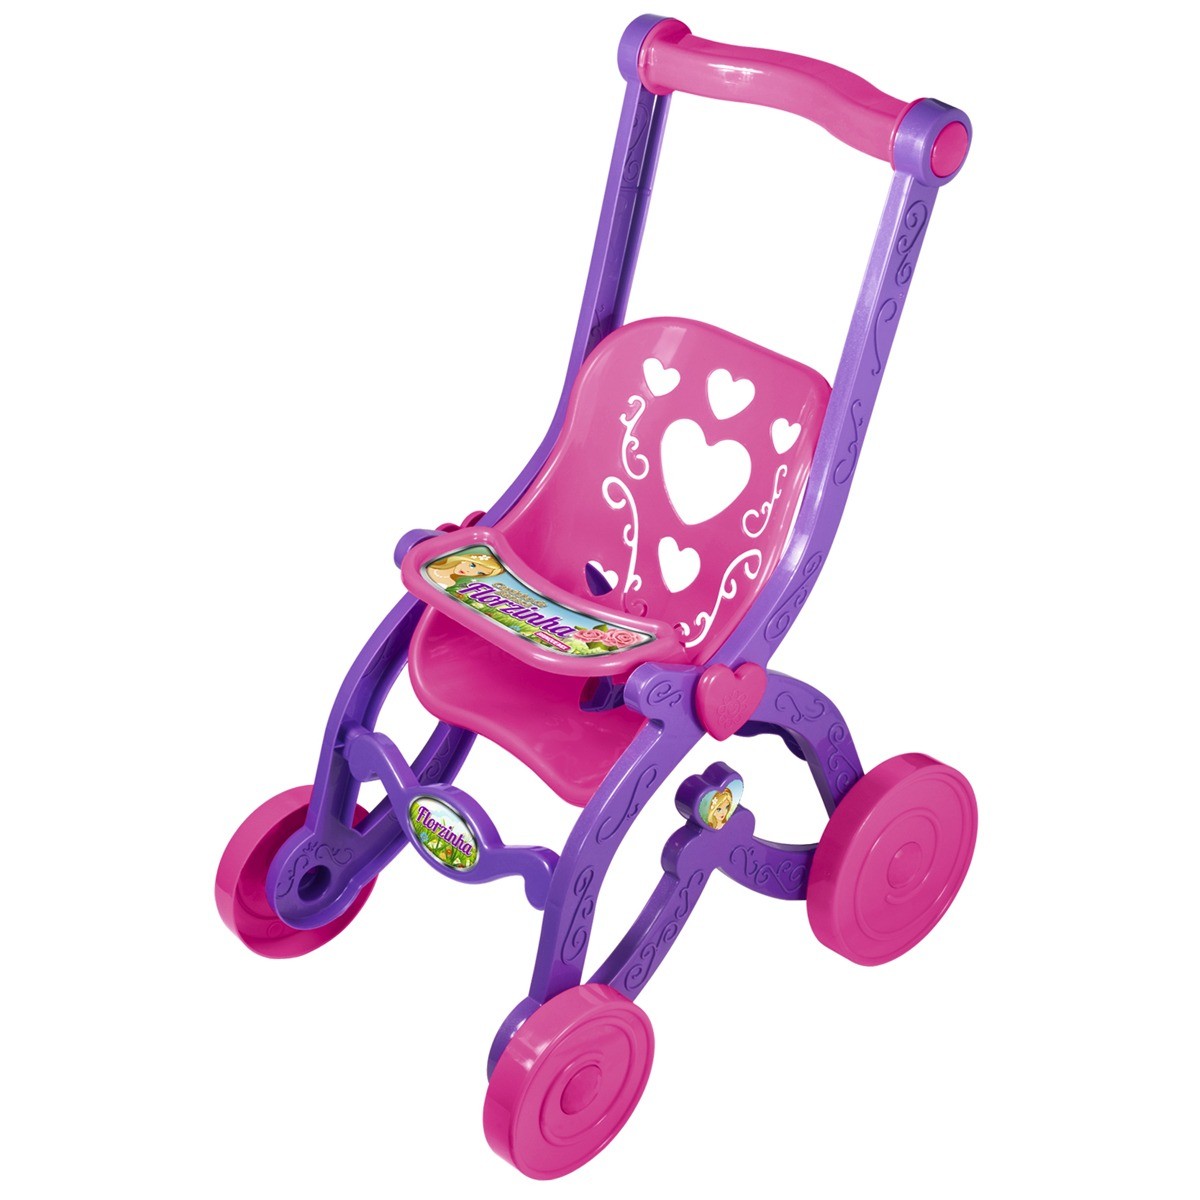 Brinquedo infantil carrinho de boneca florzinha rosa com lilas desmontado brinquemix - cdb05010-CDB05010-83576